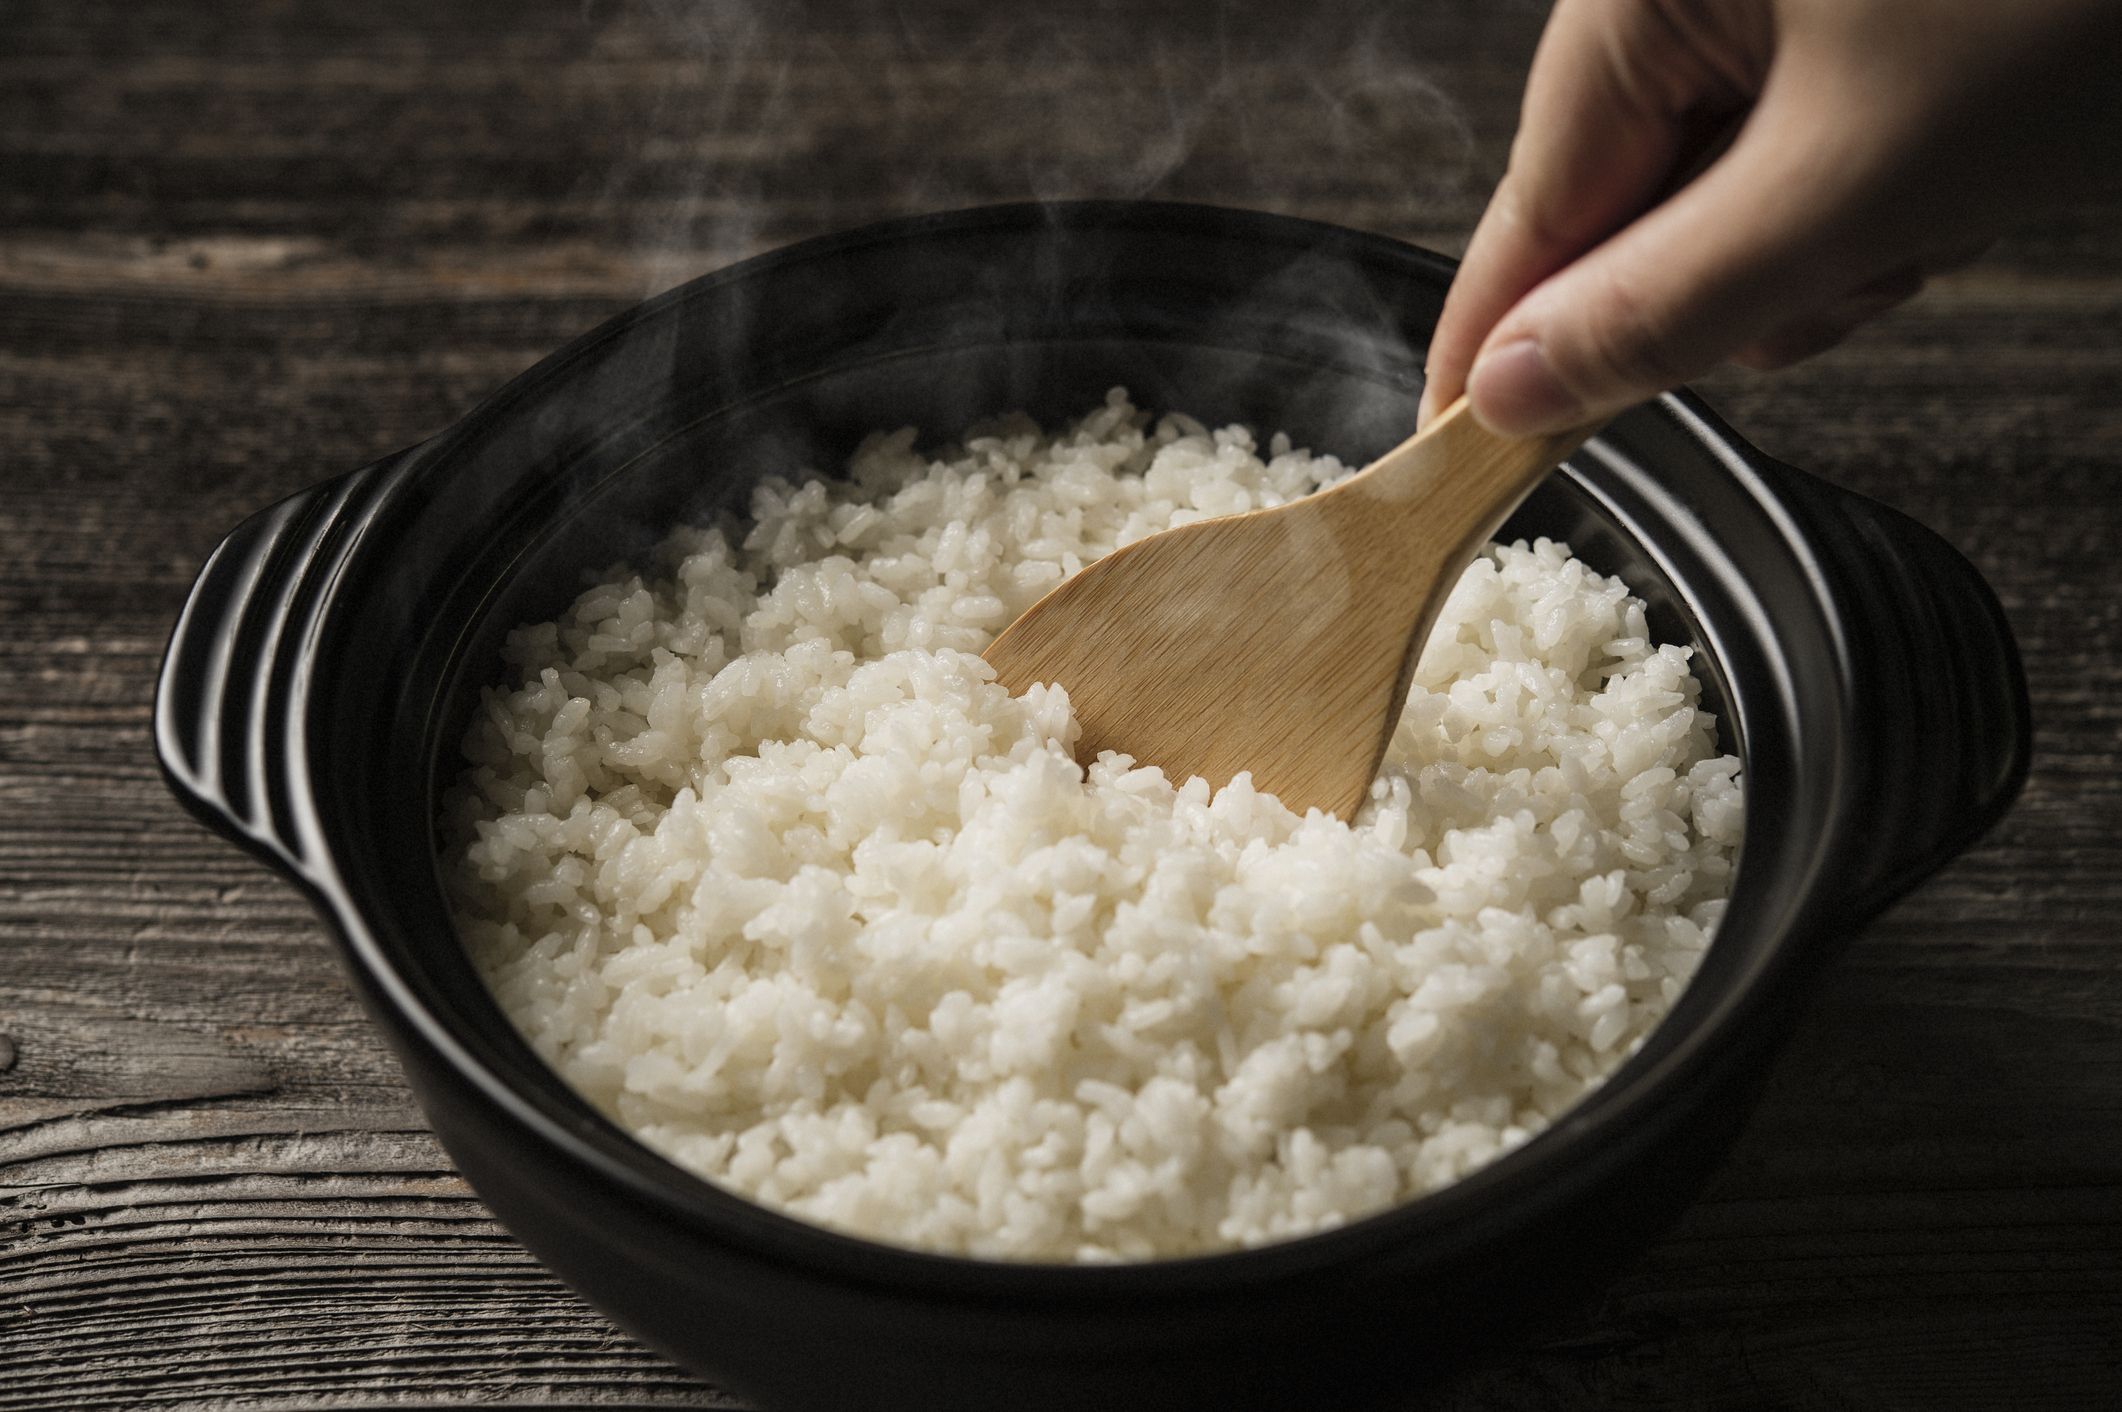 お米を食べない生活から、3食お米を食べる生活に変えて起こった変化